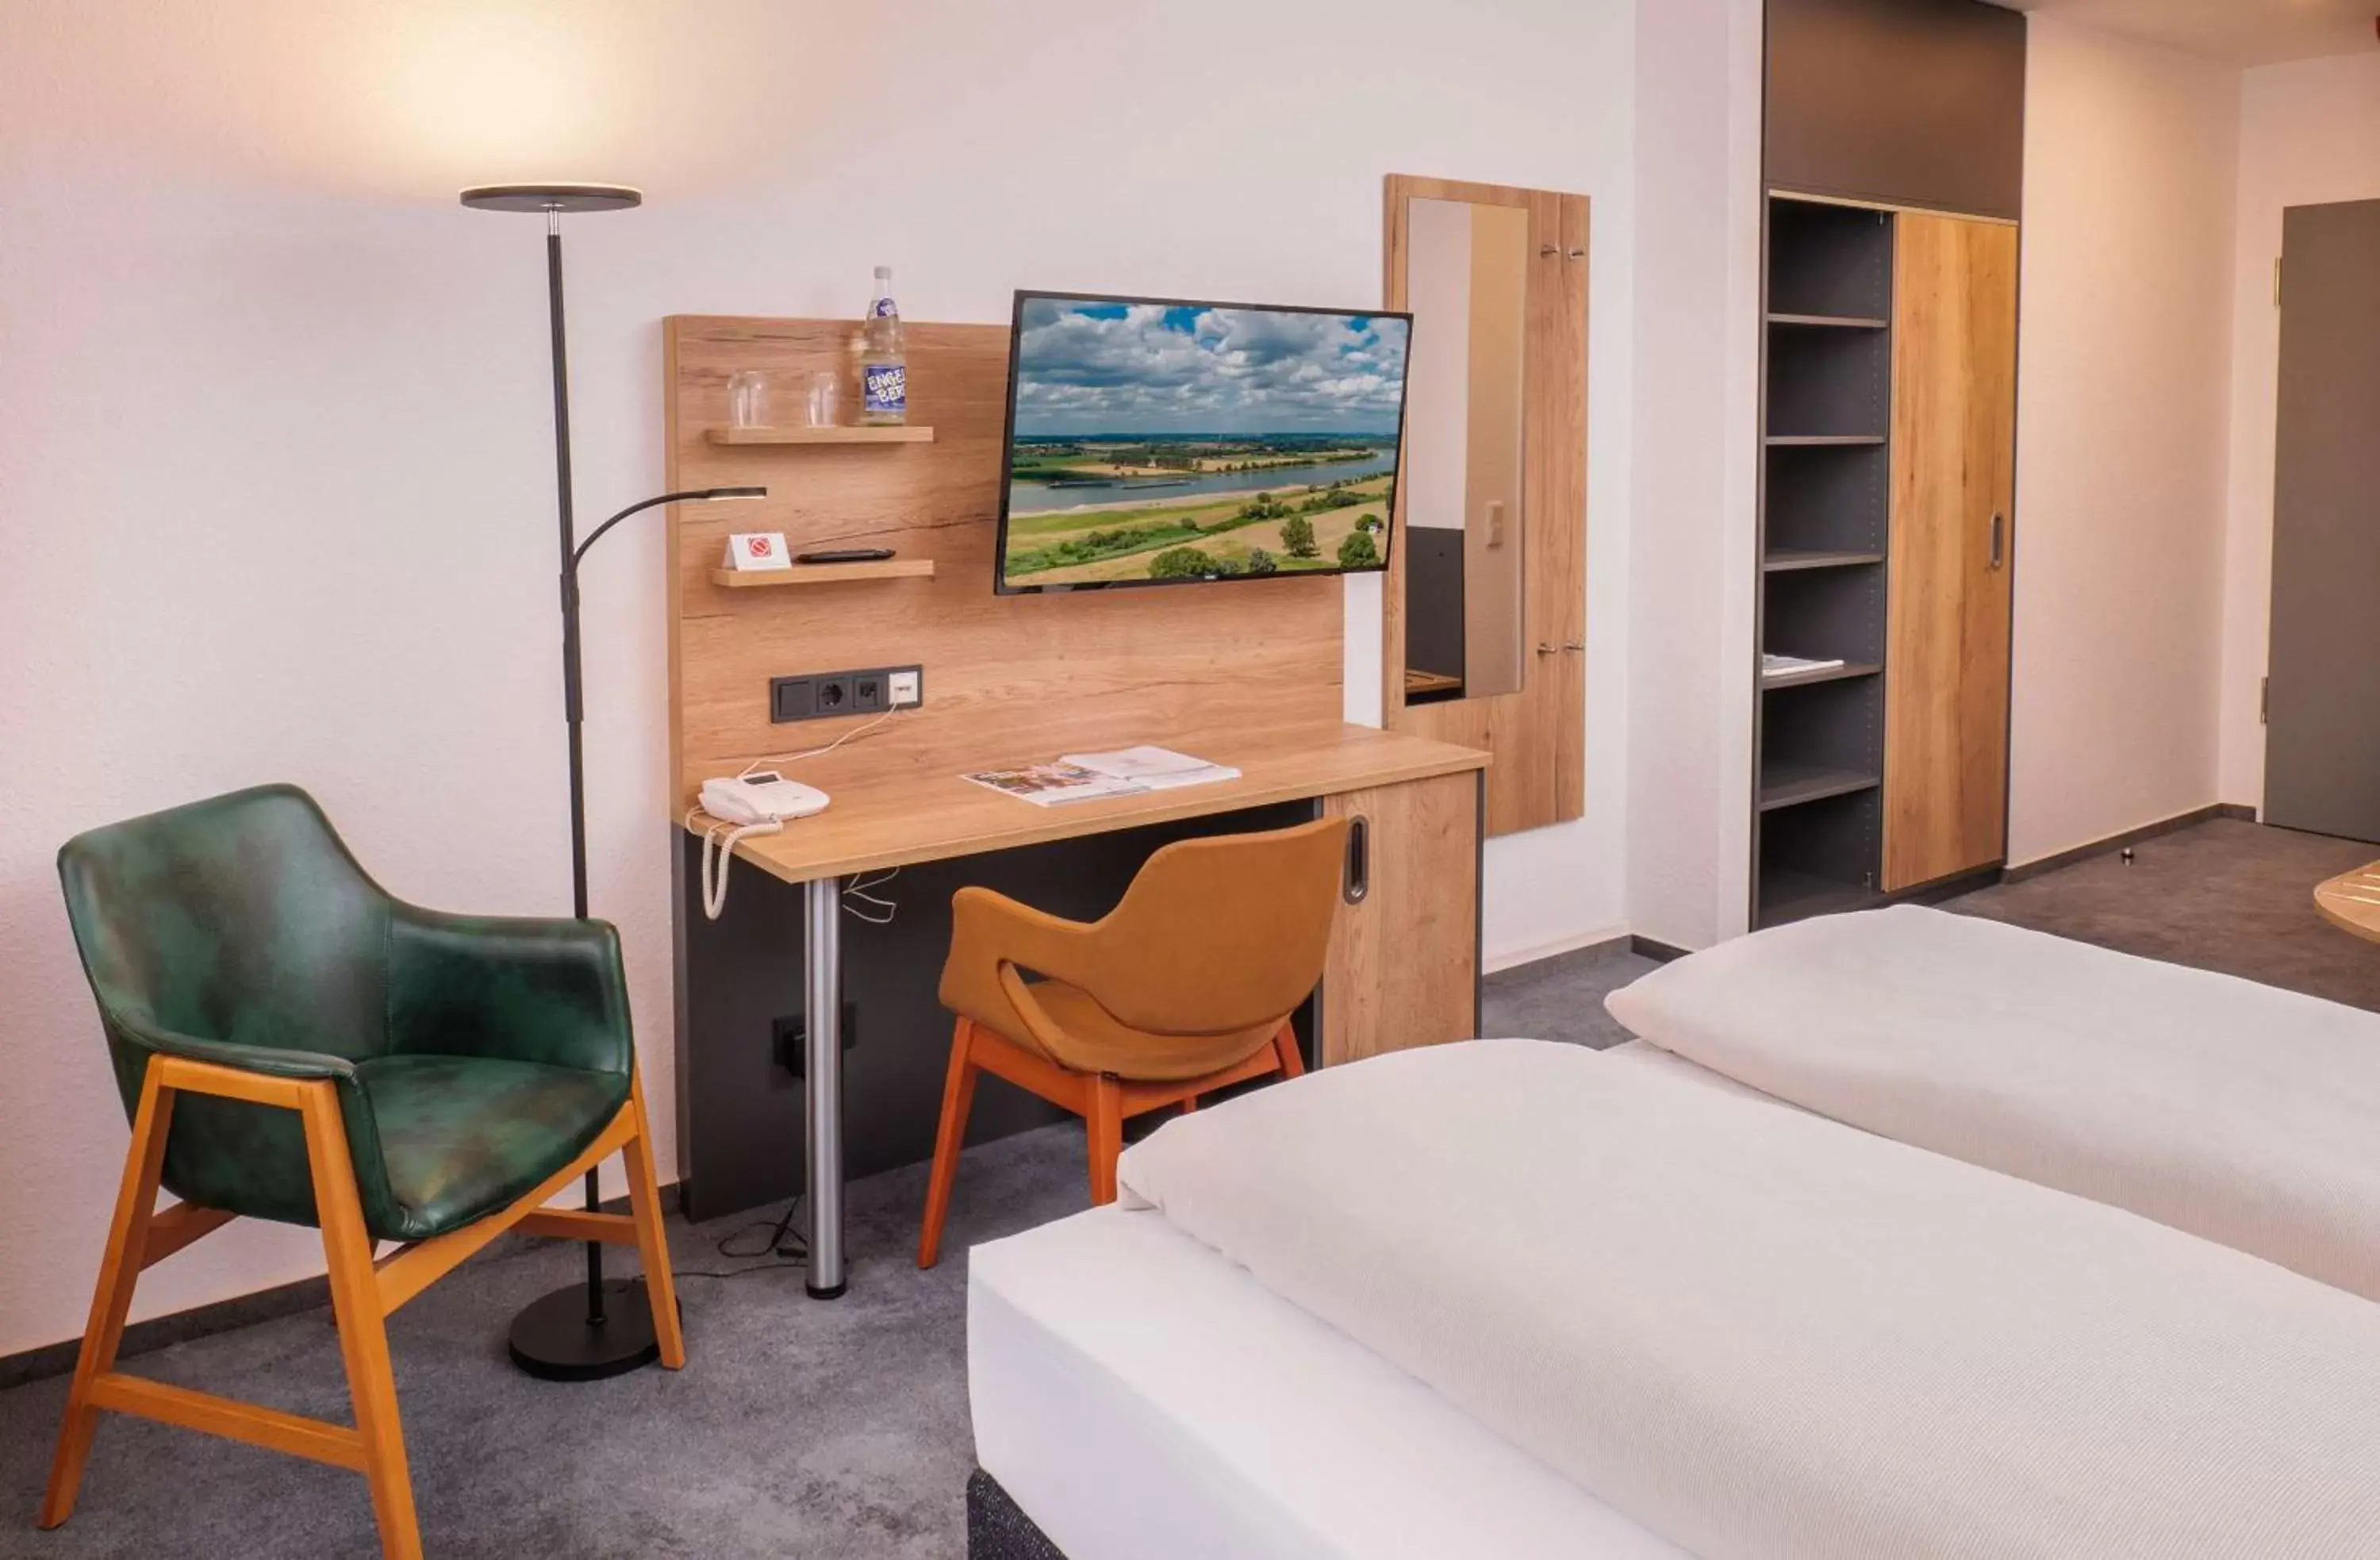 Bedroom, Bed in Best Western Comfort Business Hotel Düsseldorf-Neuss